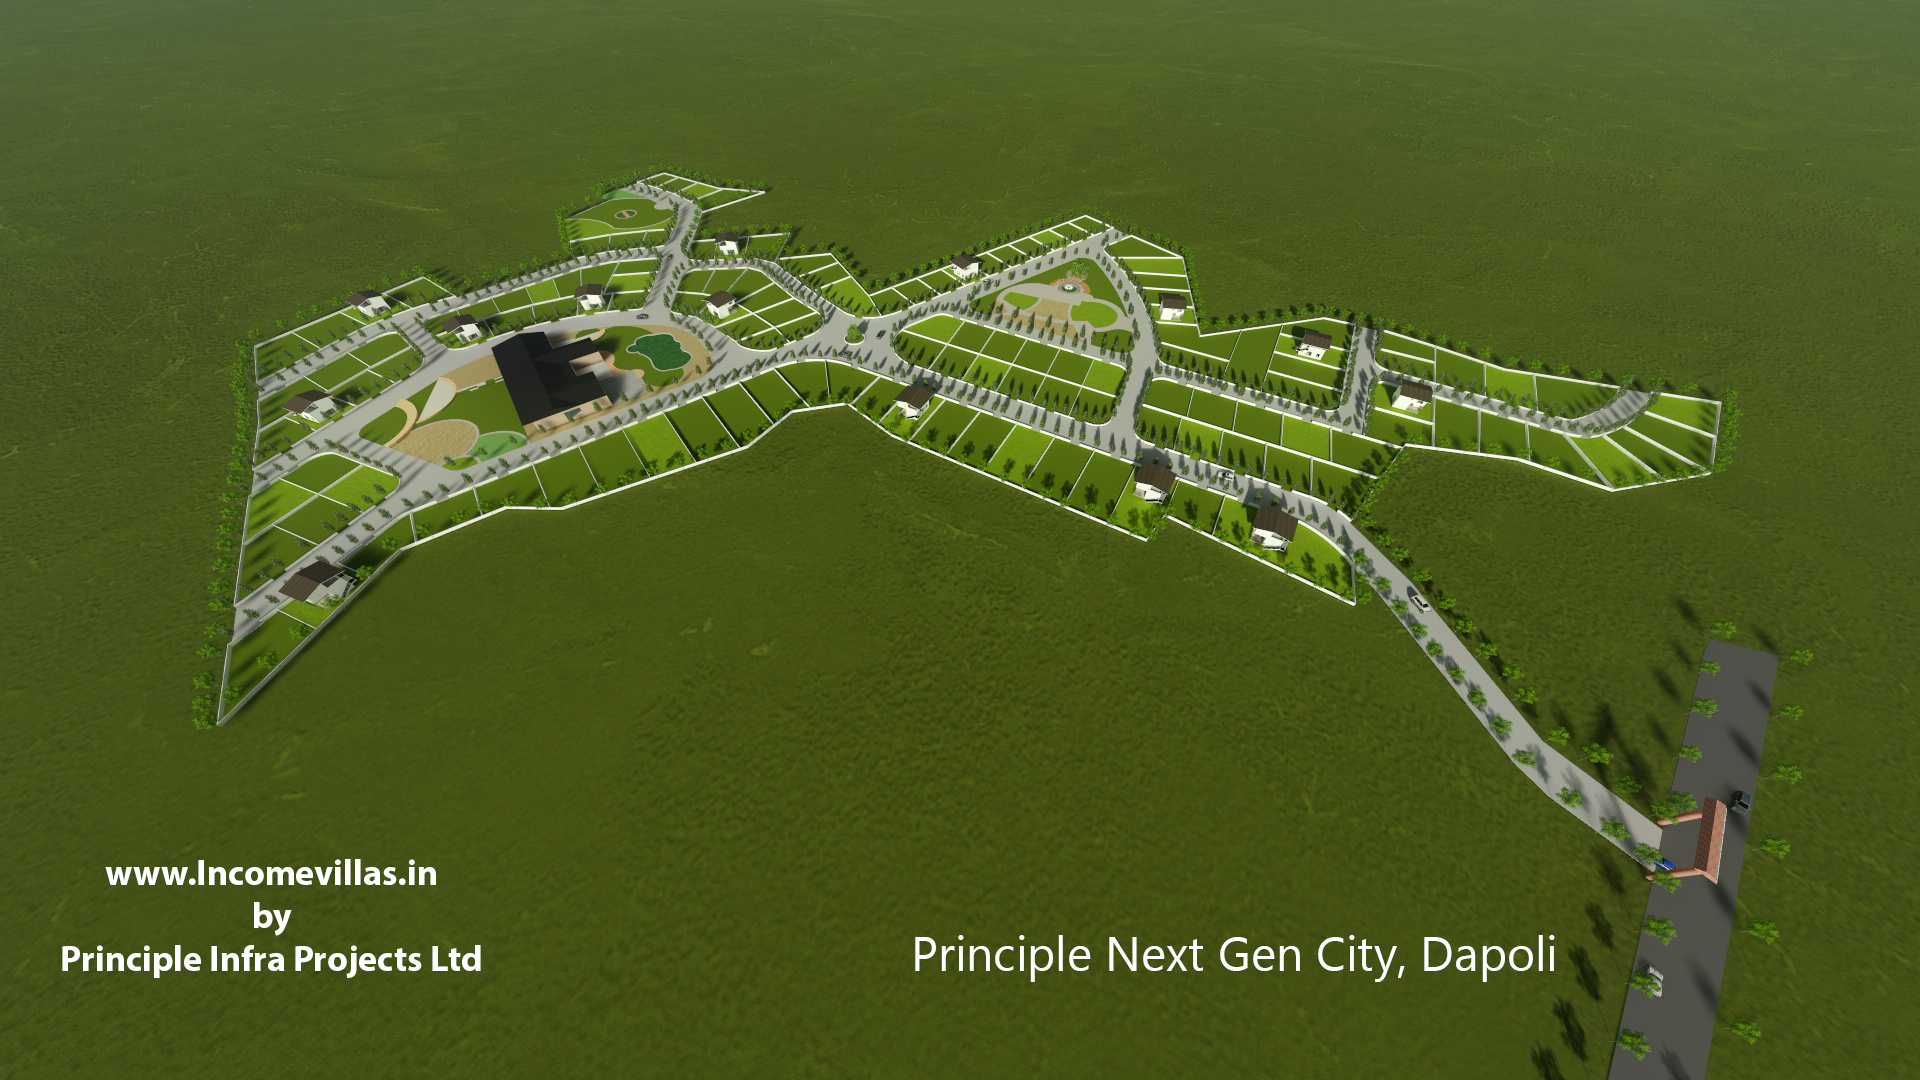 Principle NextGen City Dapoli